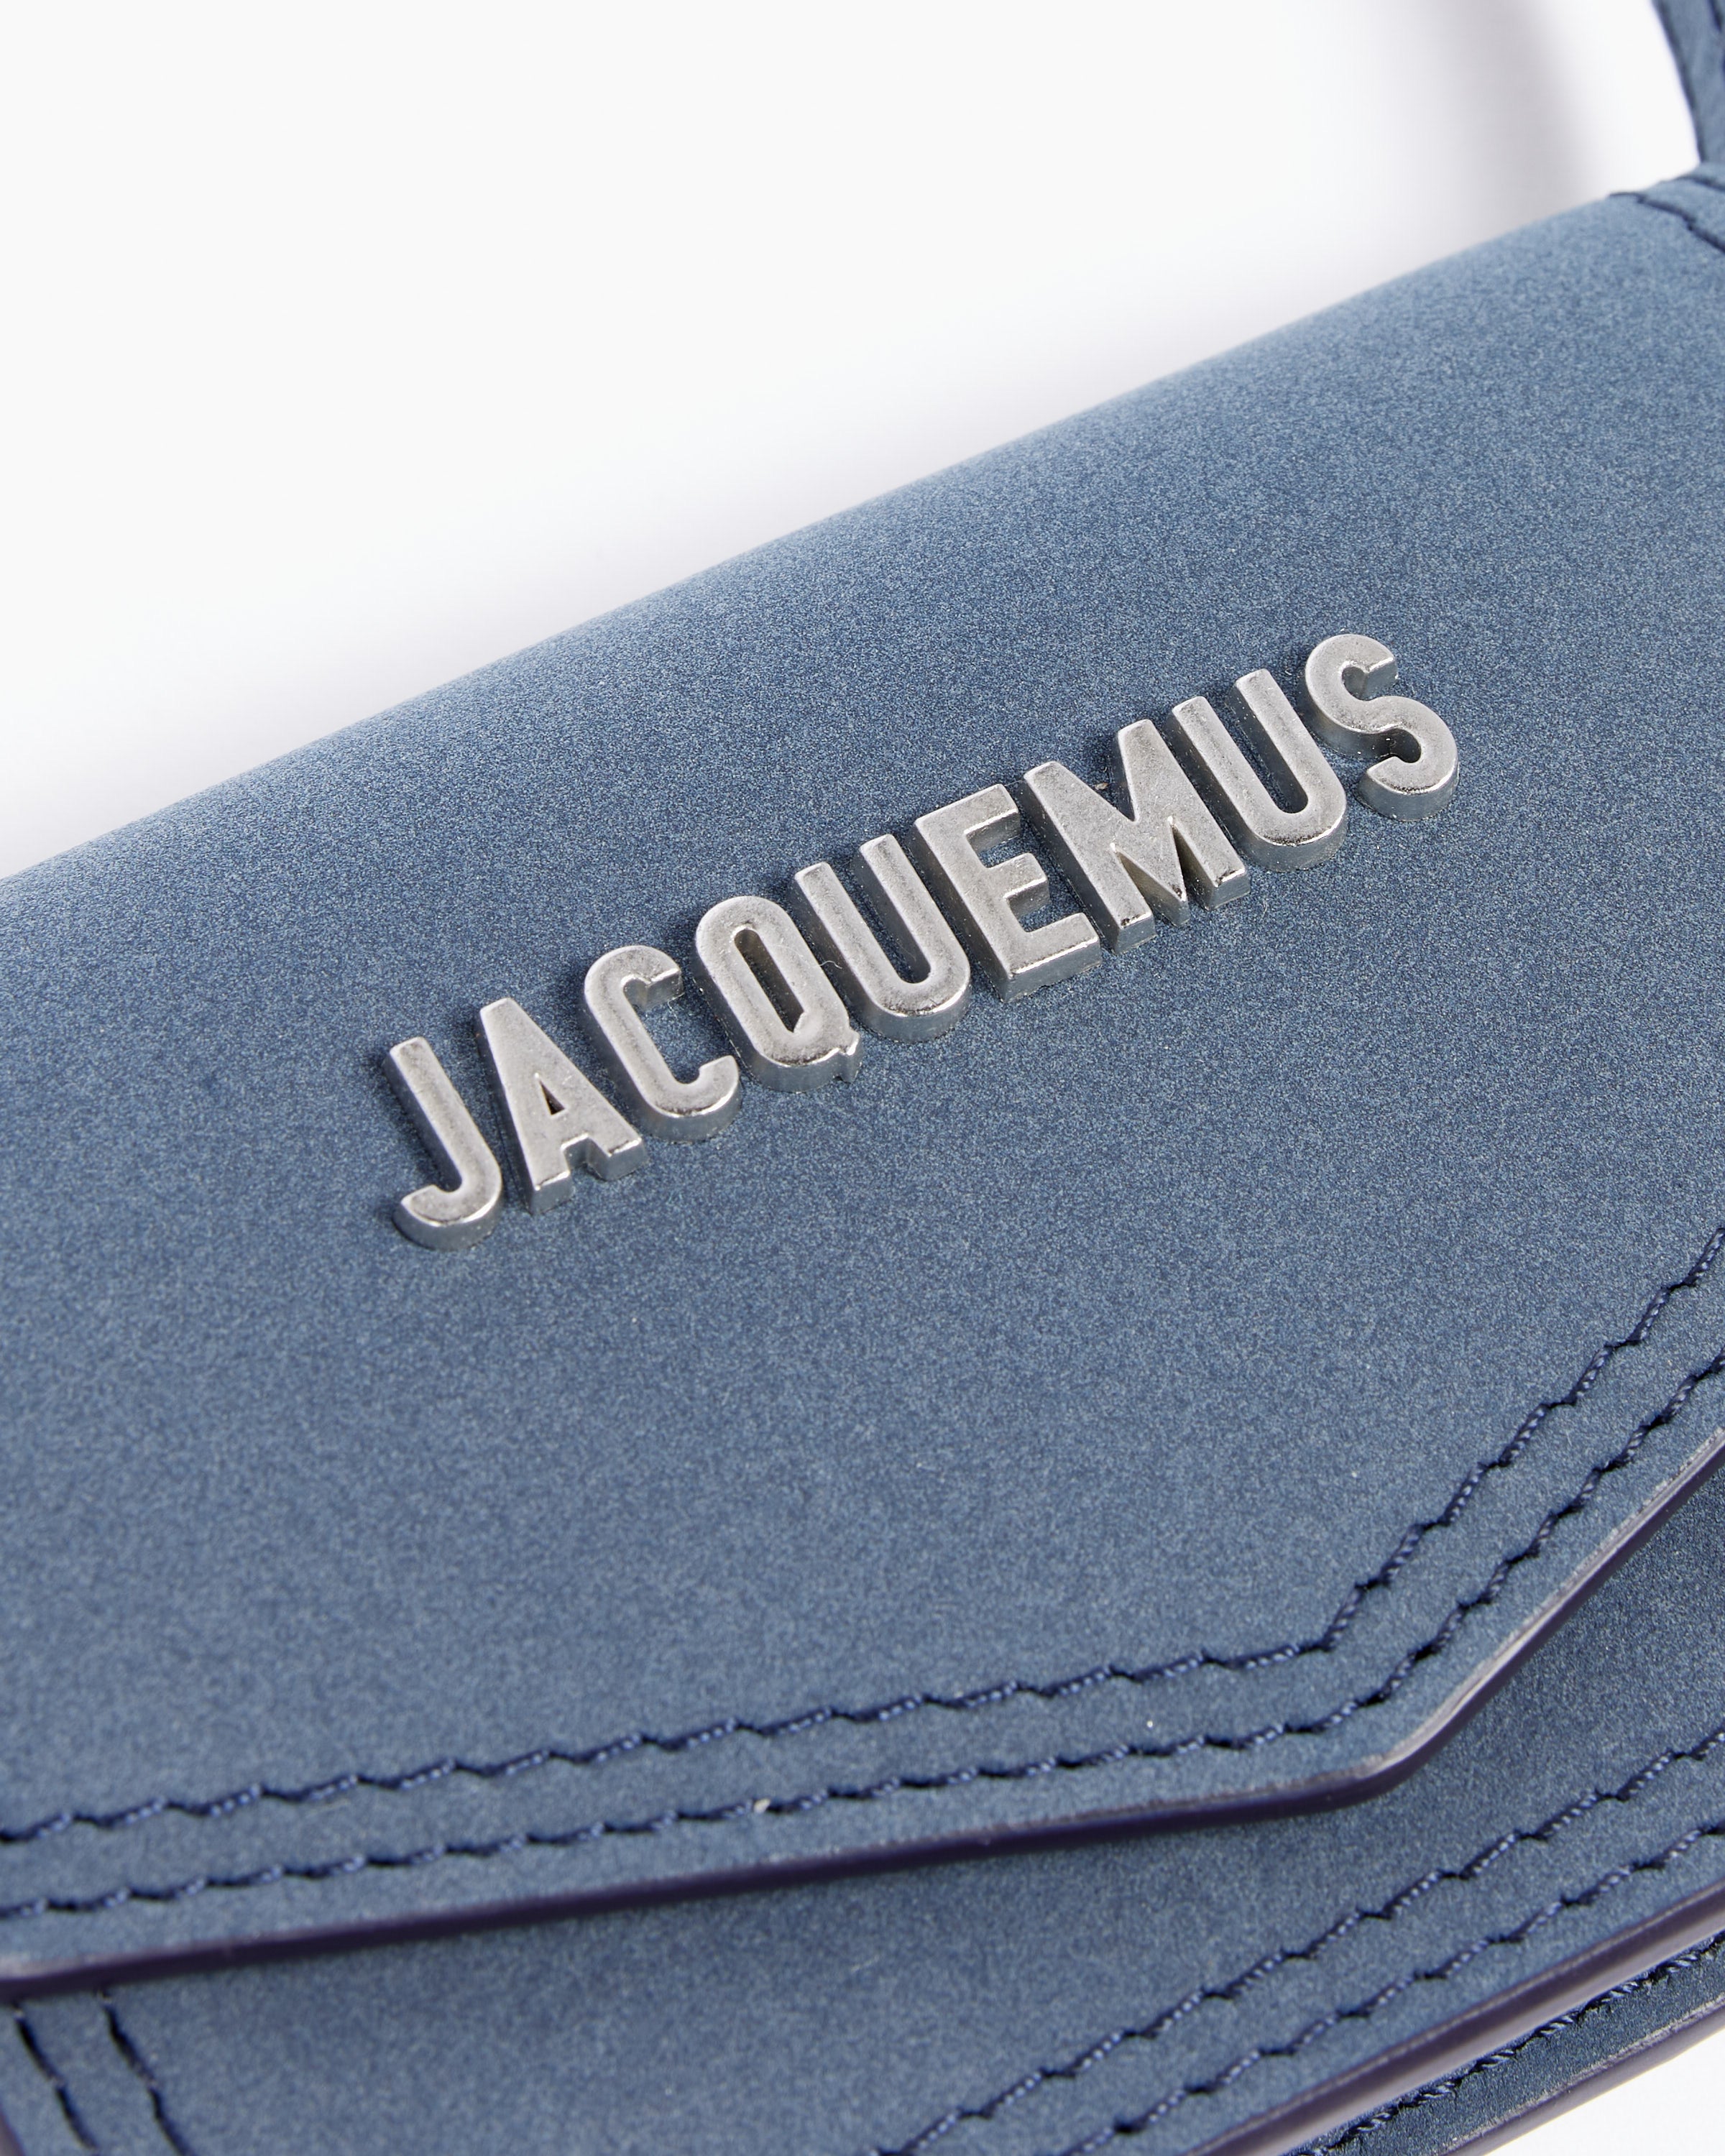 Black 'Le Porte Azur' strapped pouch Jacquemus - StclaircomoShops Spain